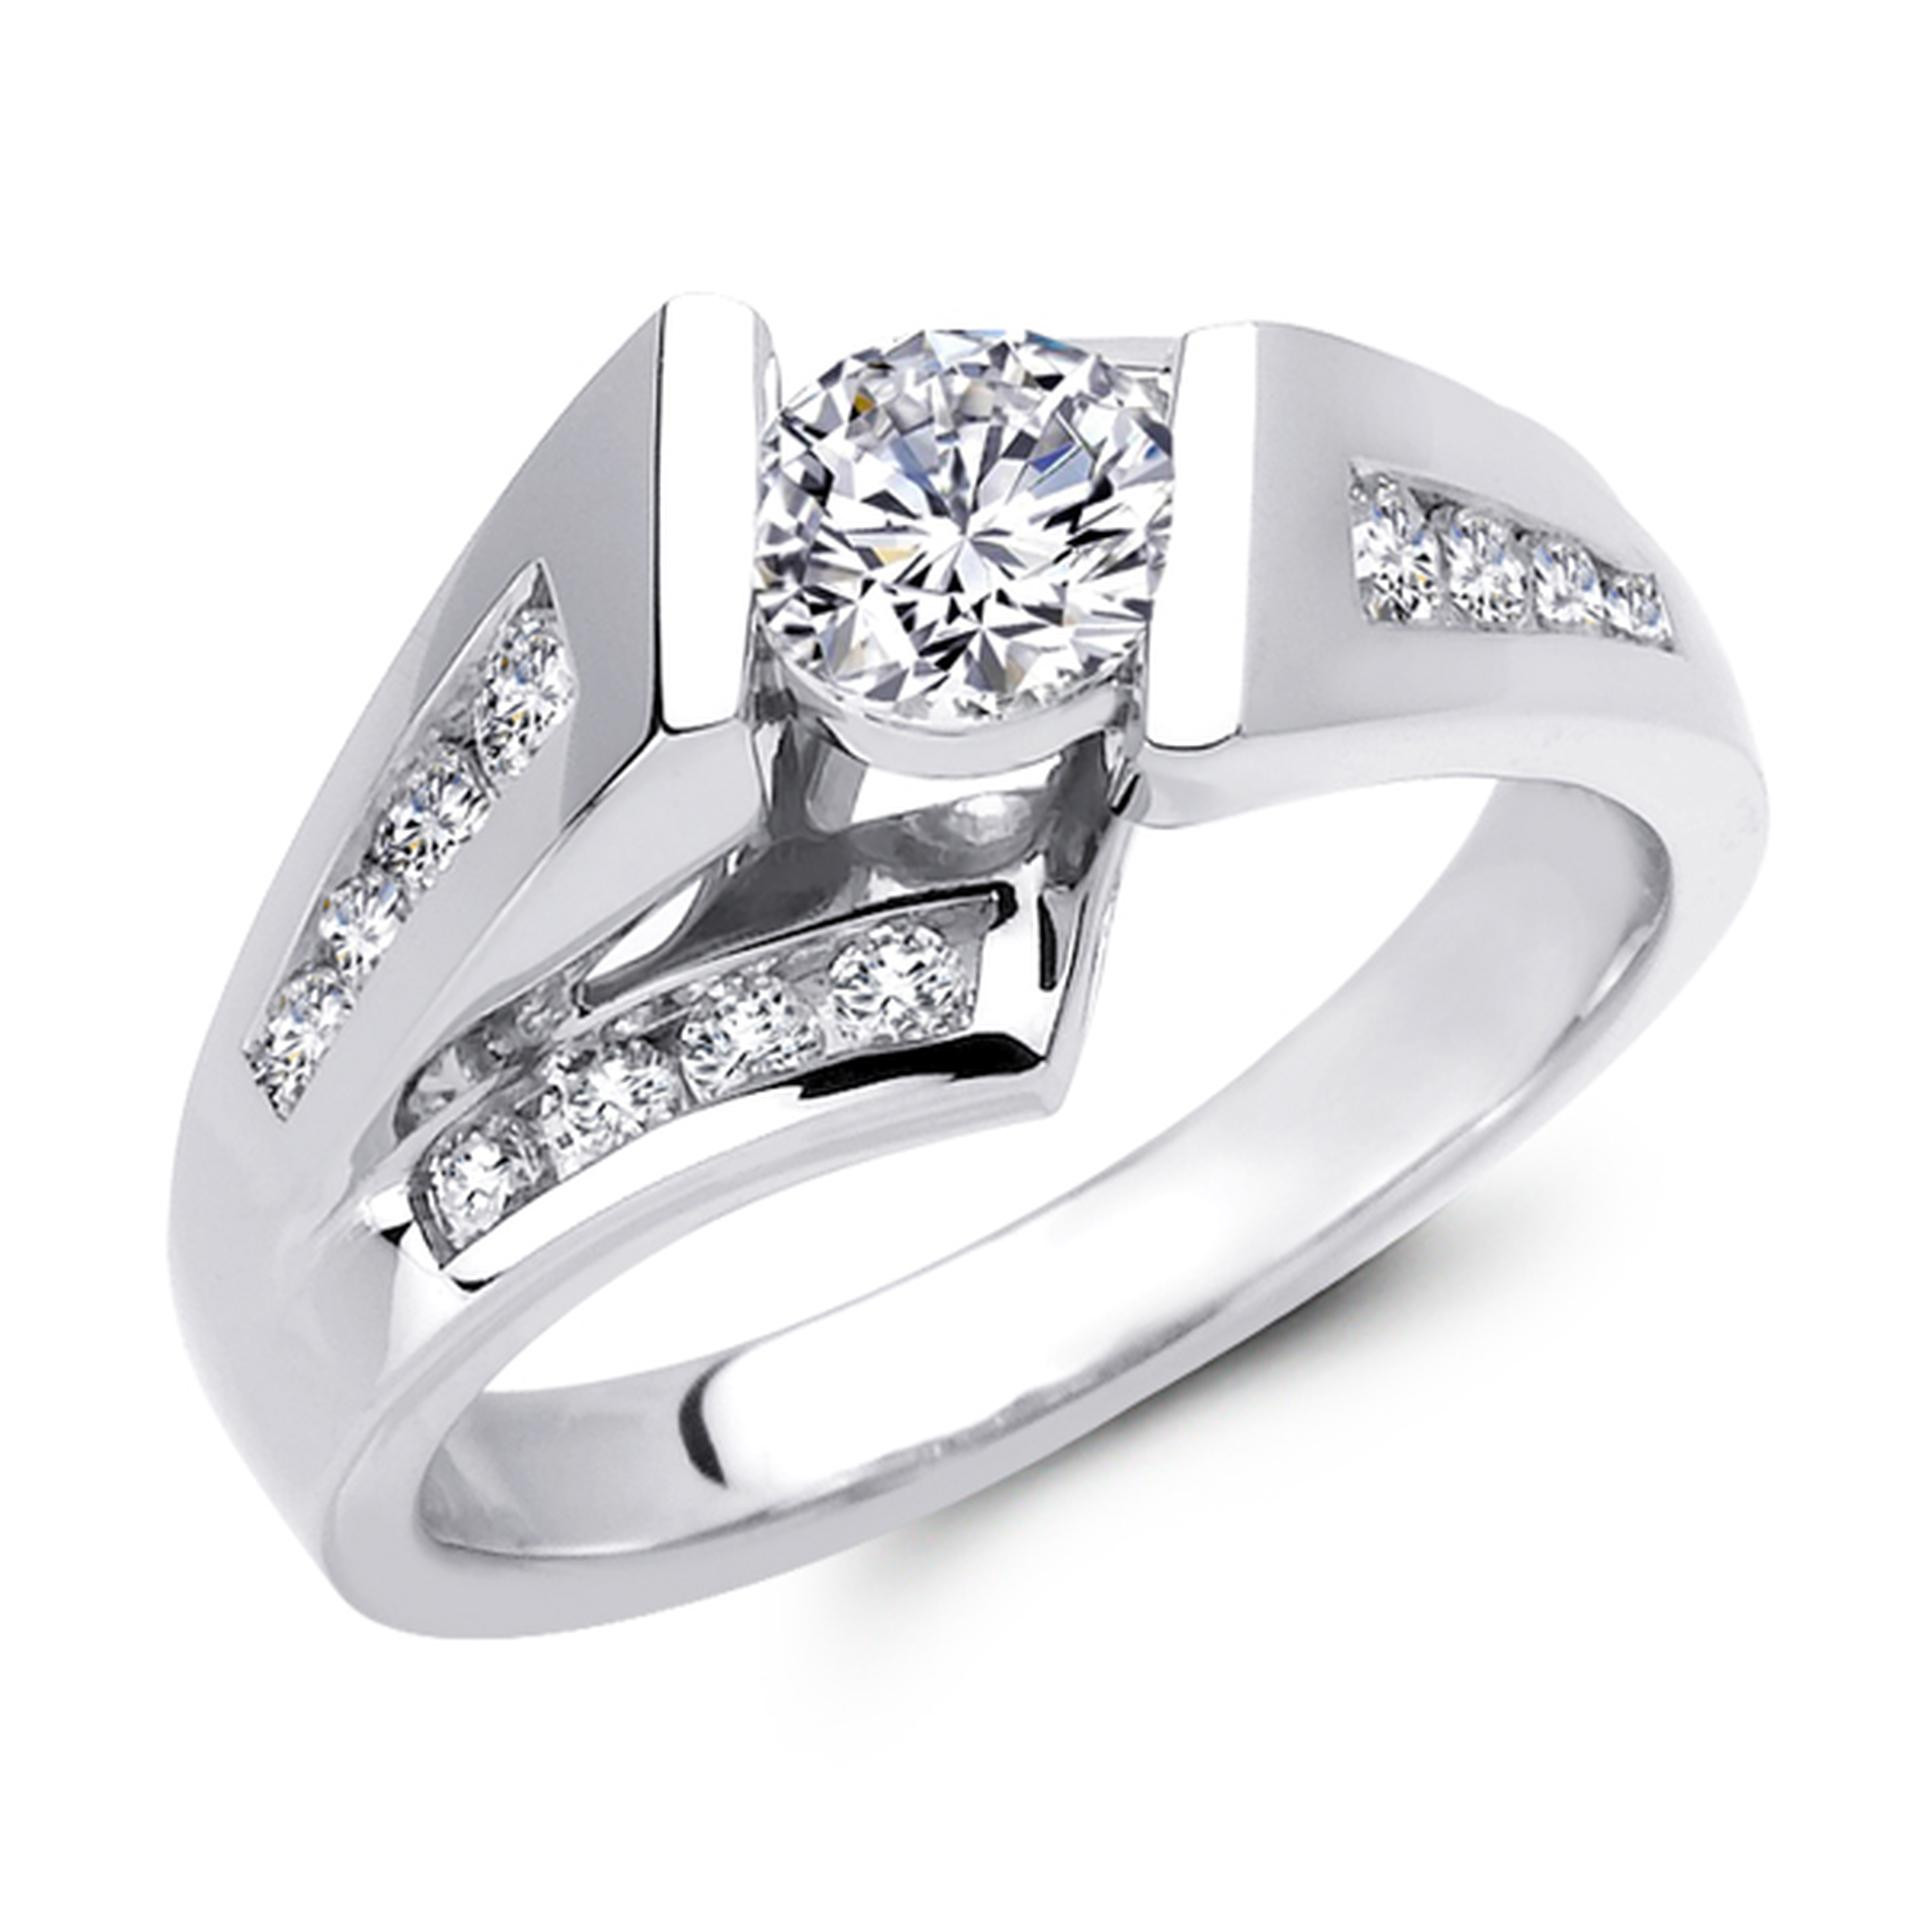 Wedding Rings Utah
 Ari Diamonds Full Service Utah Jewelers